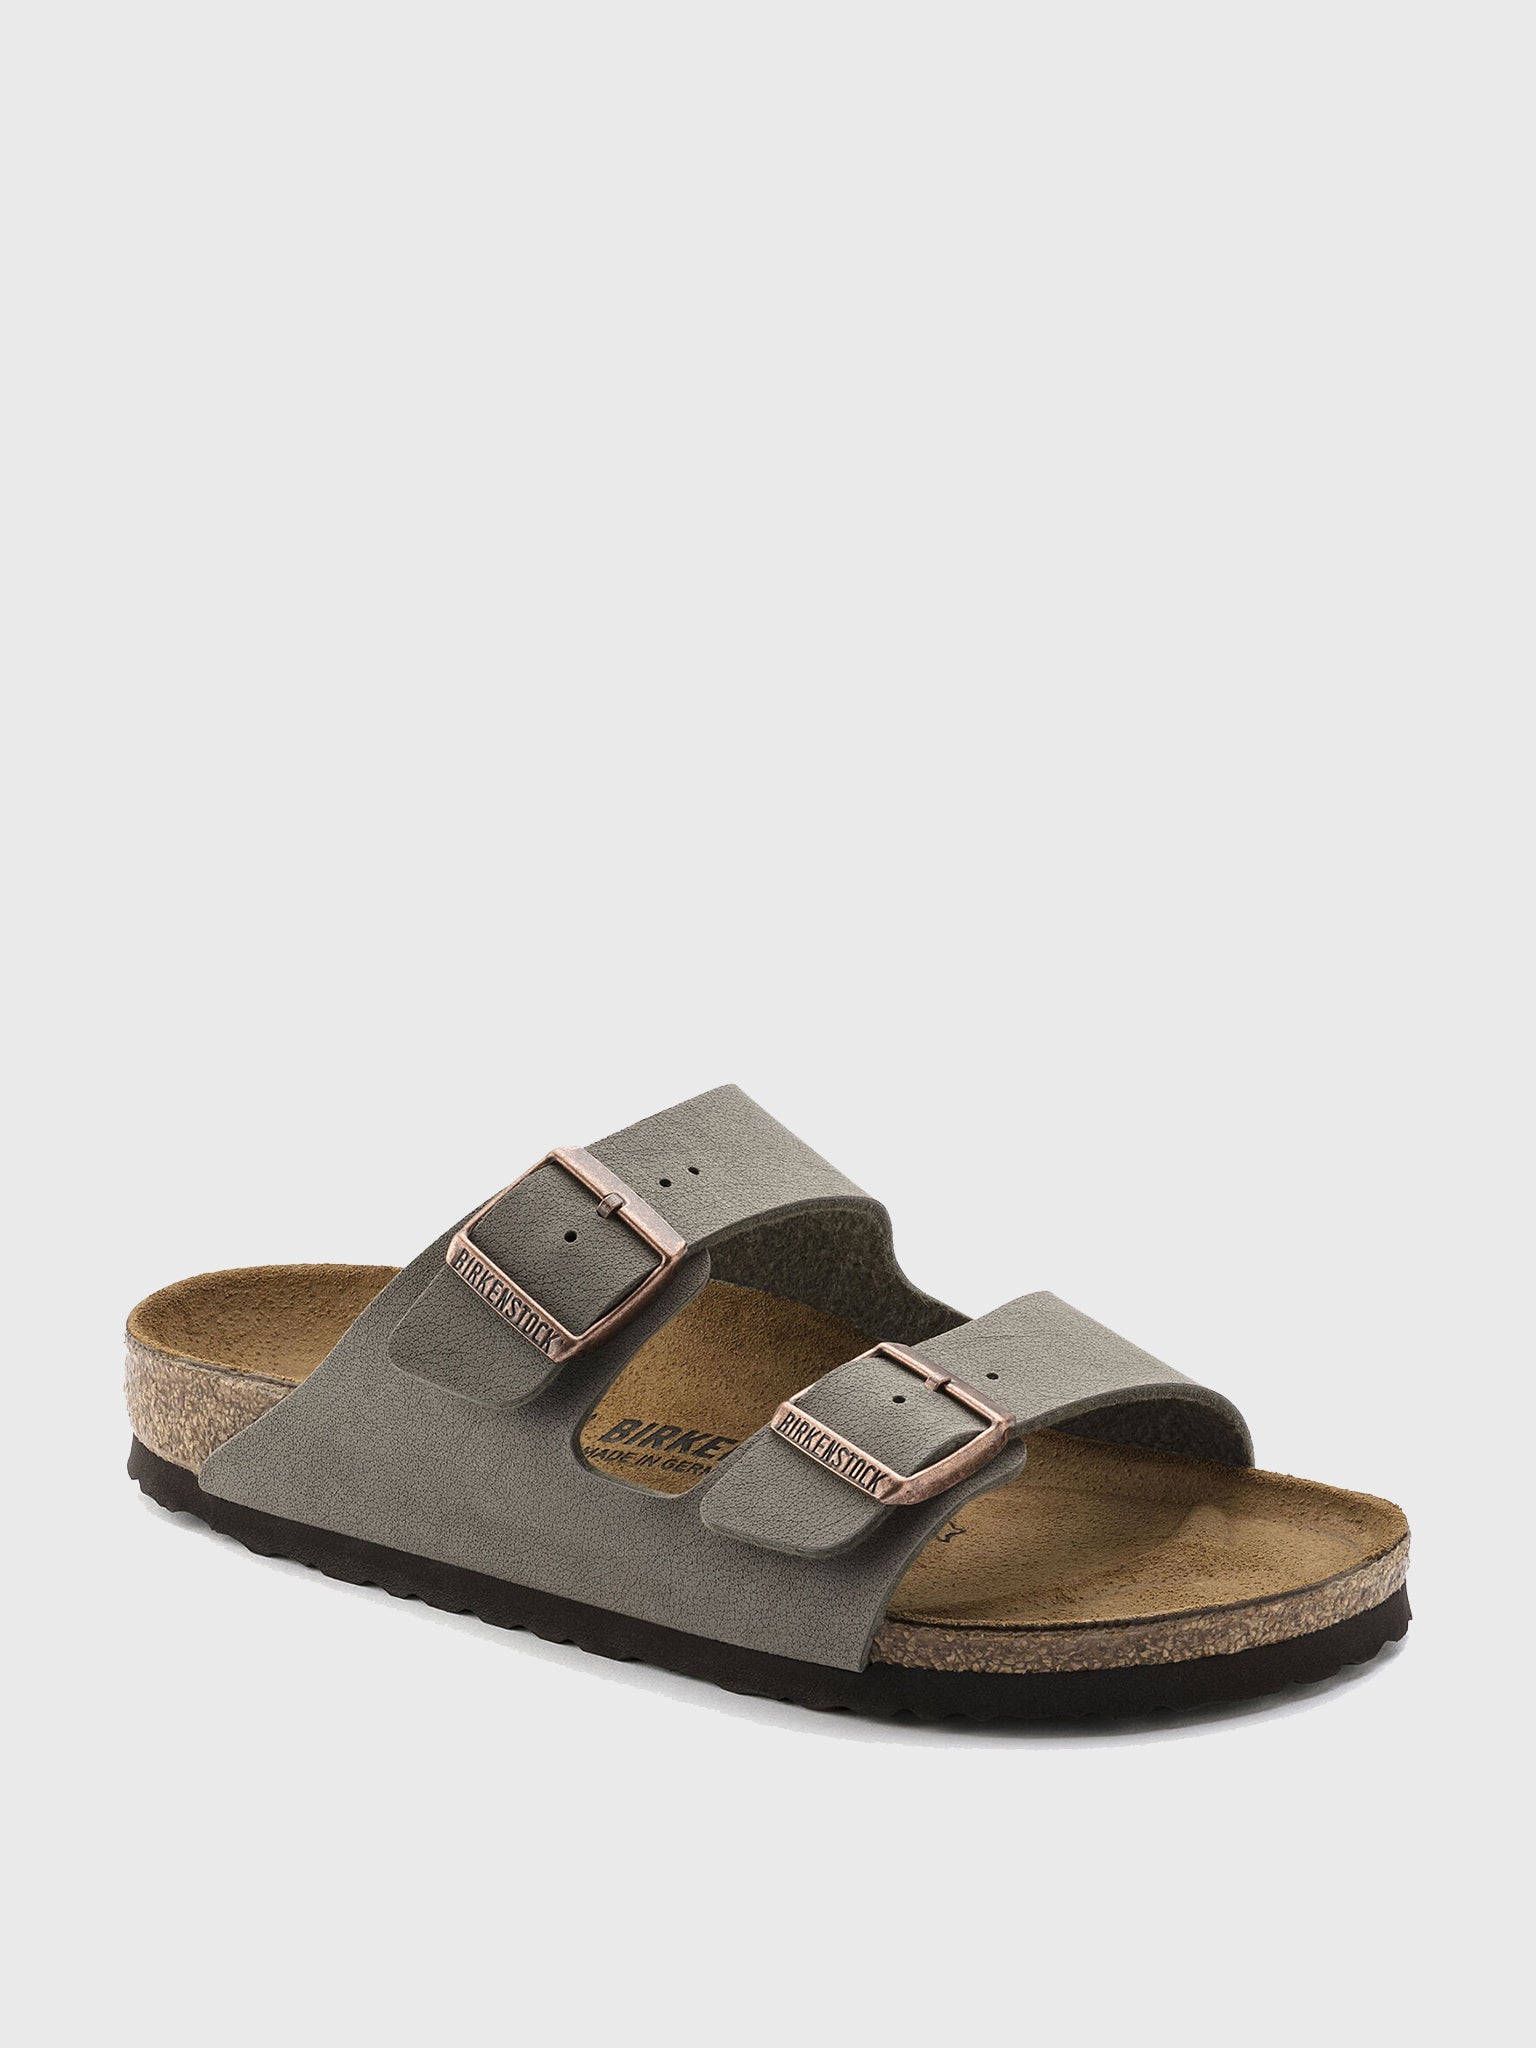 birkenstock men's arizona birkibuc sandals